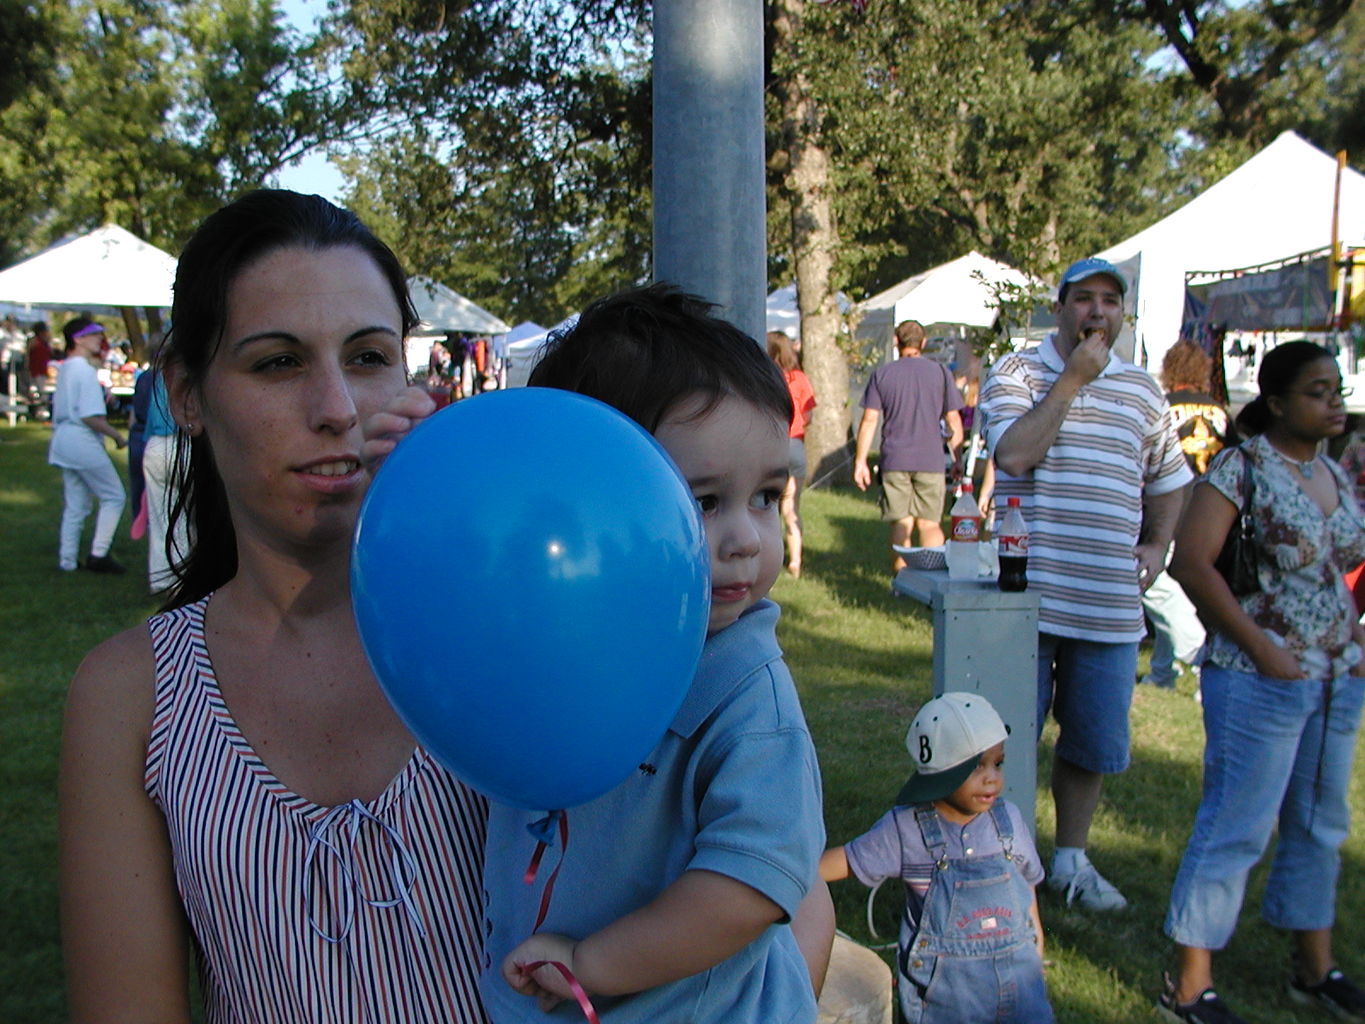 Balloon Fest 2004
